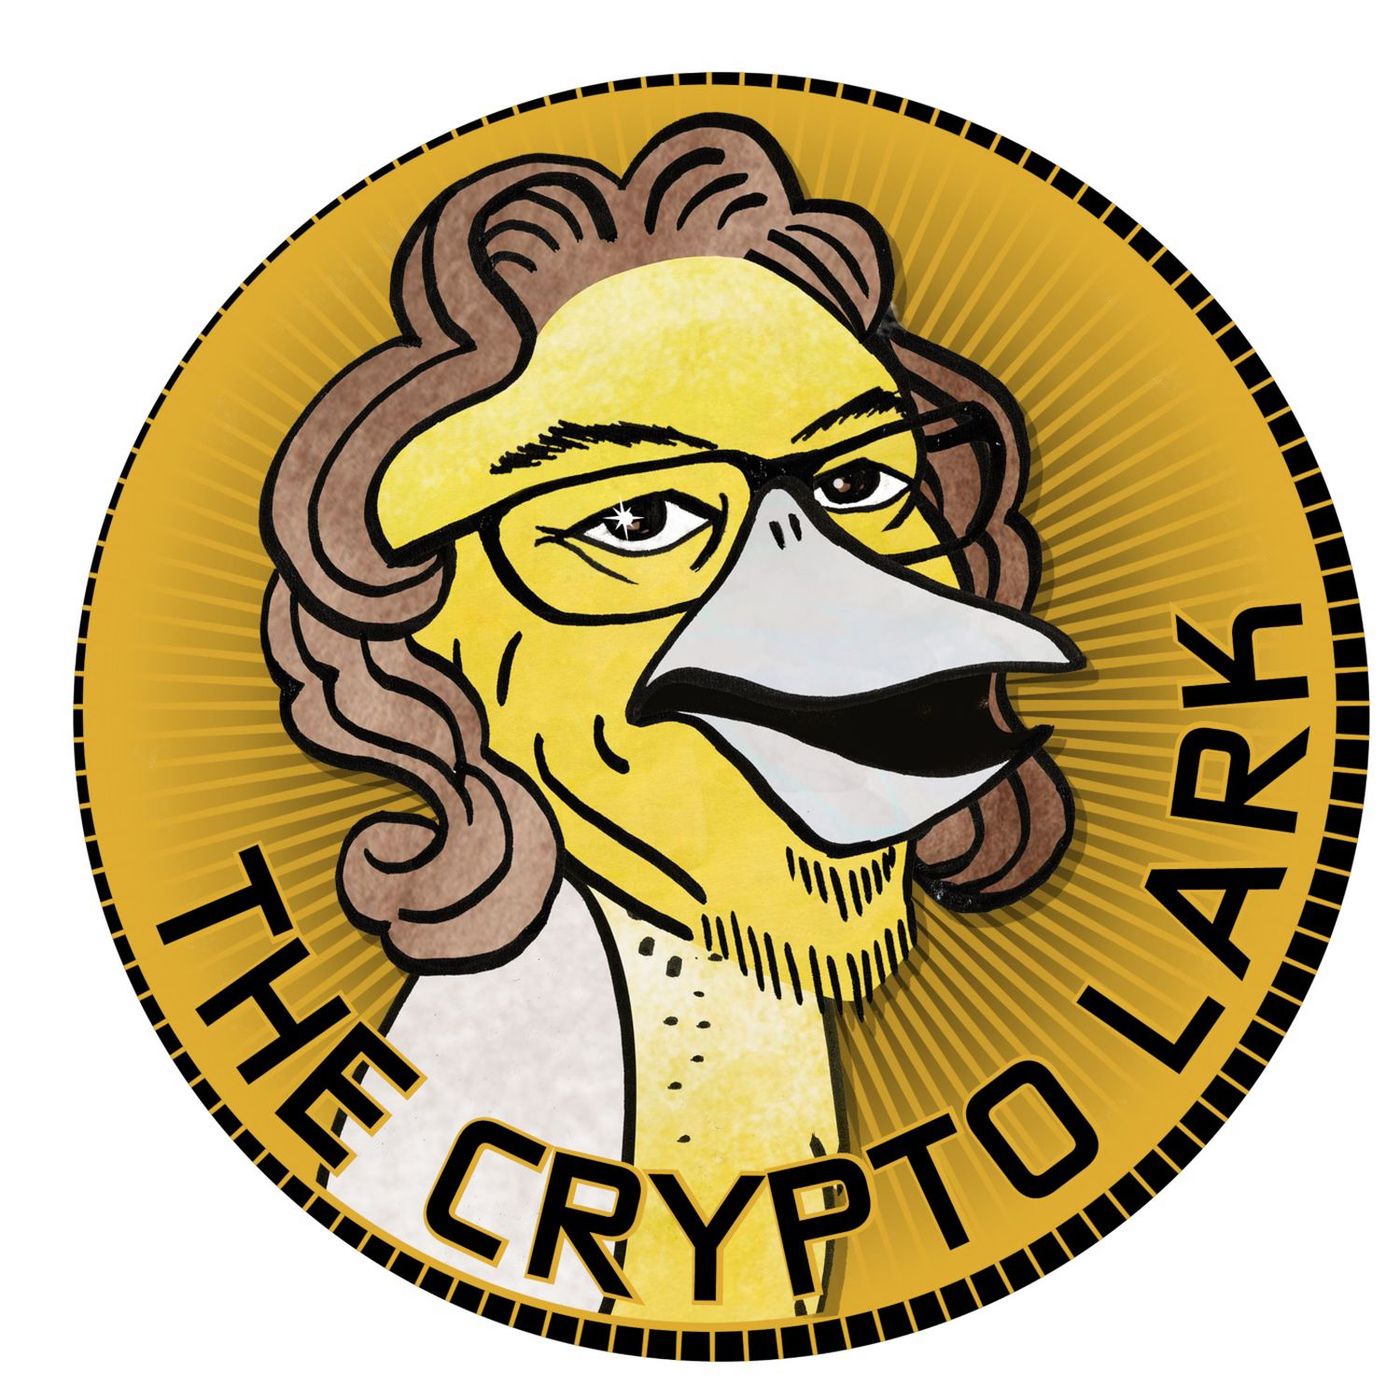 crypto lark haven